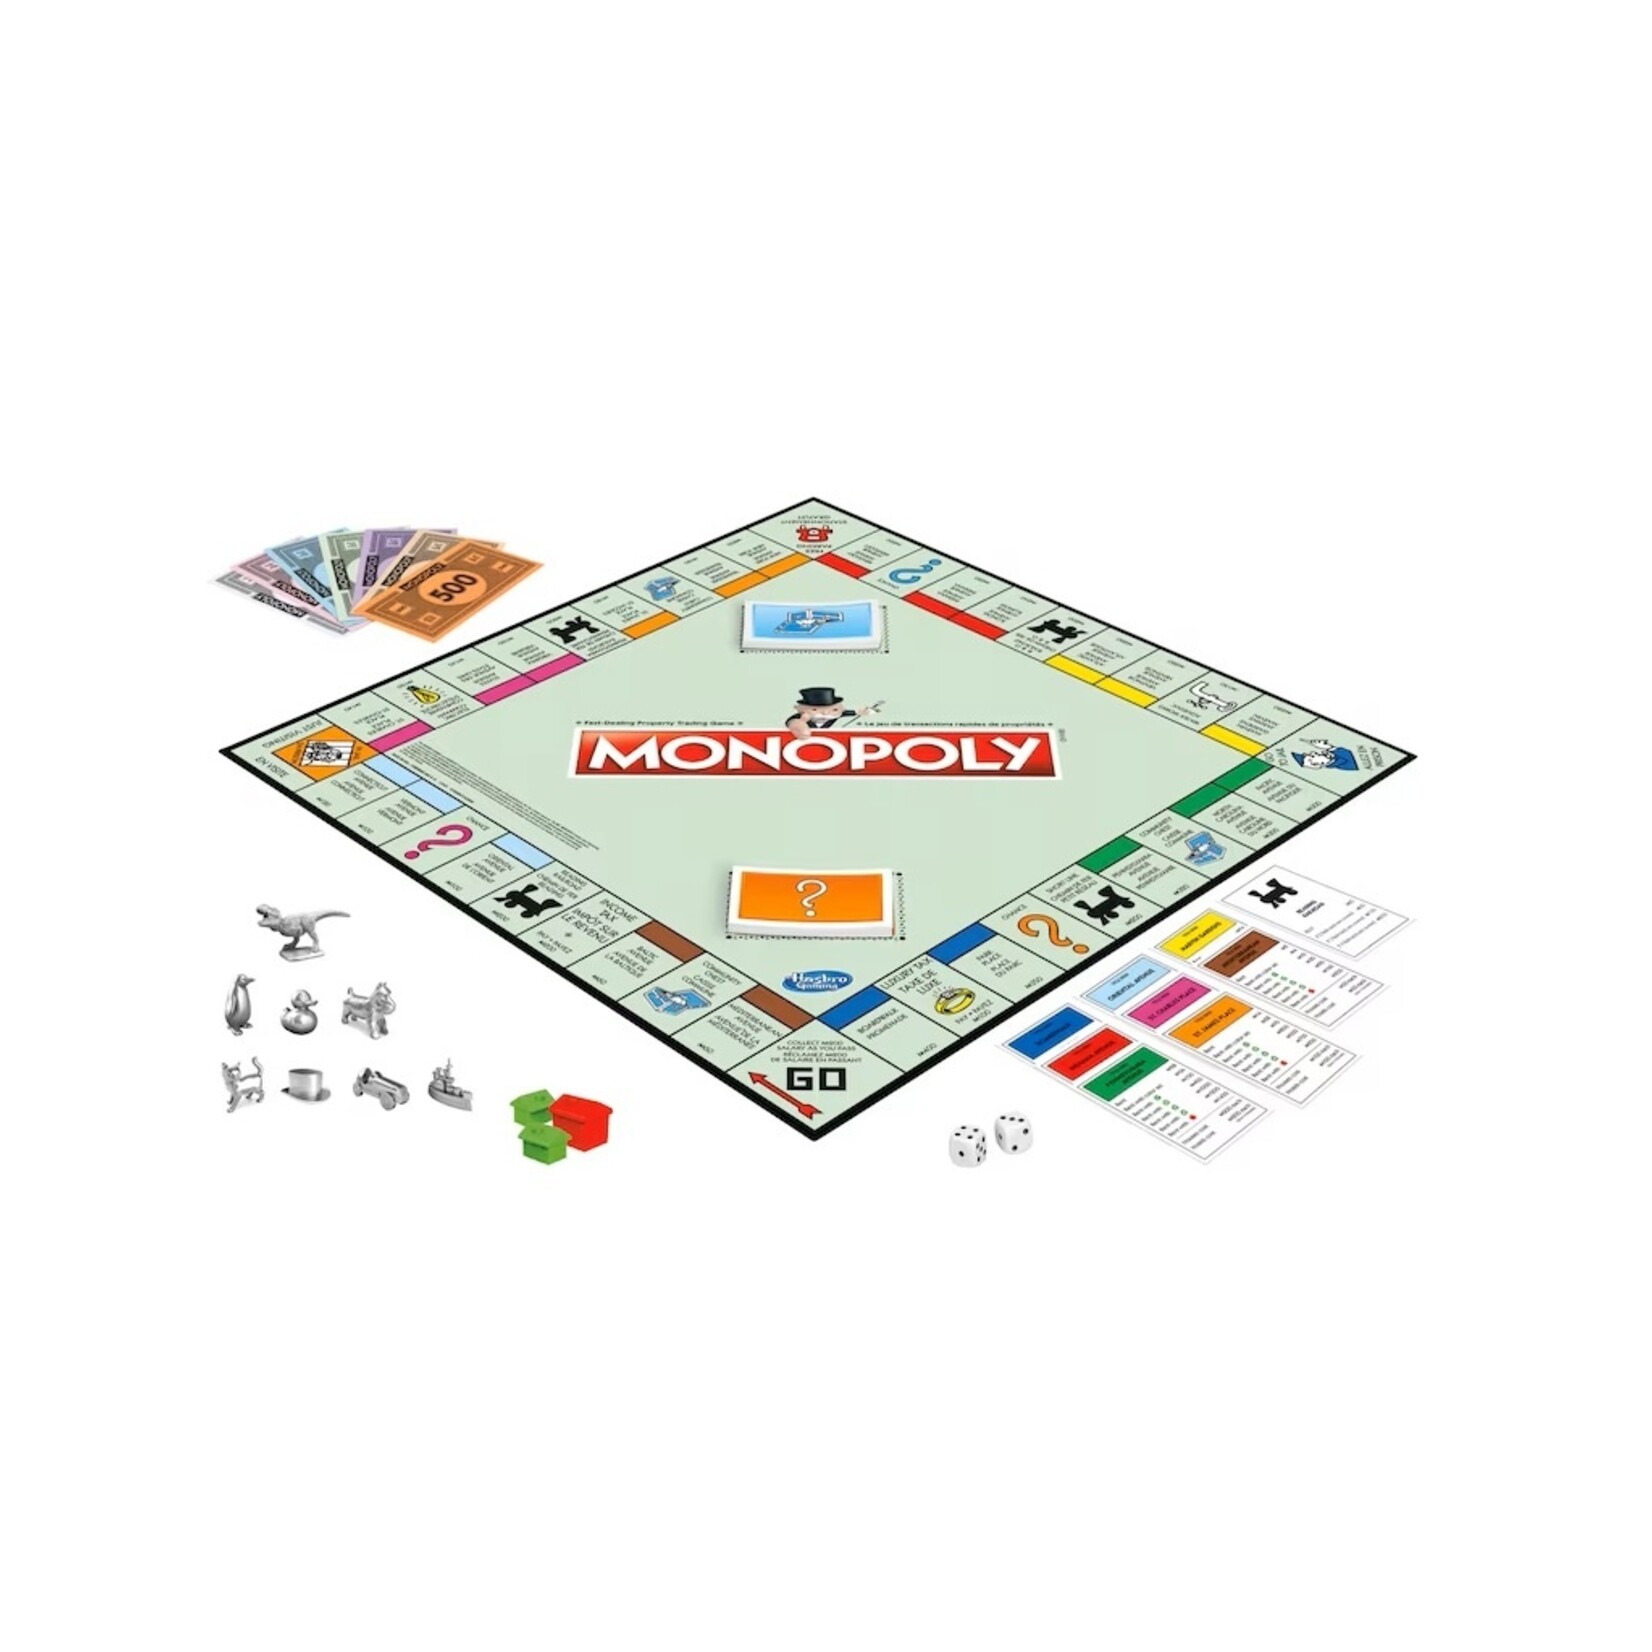 Hasbro Monopoly (Multilingue) Refresh